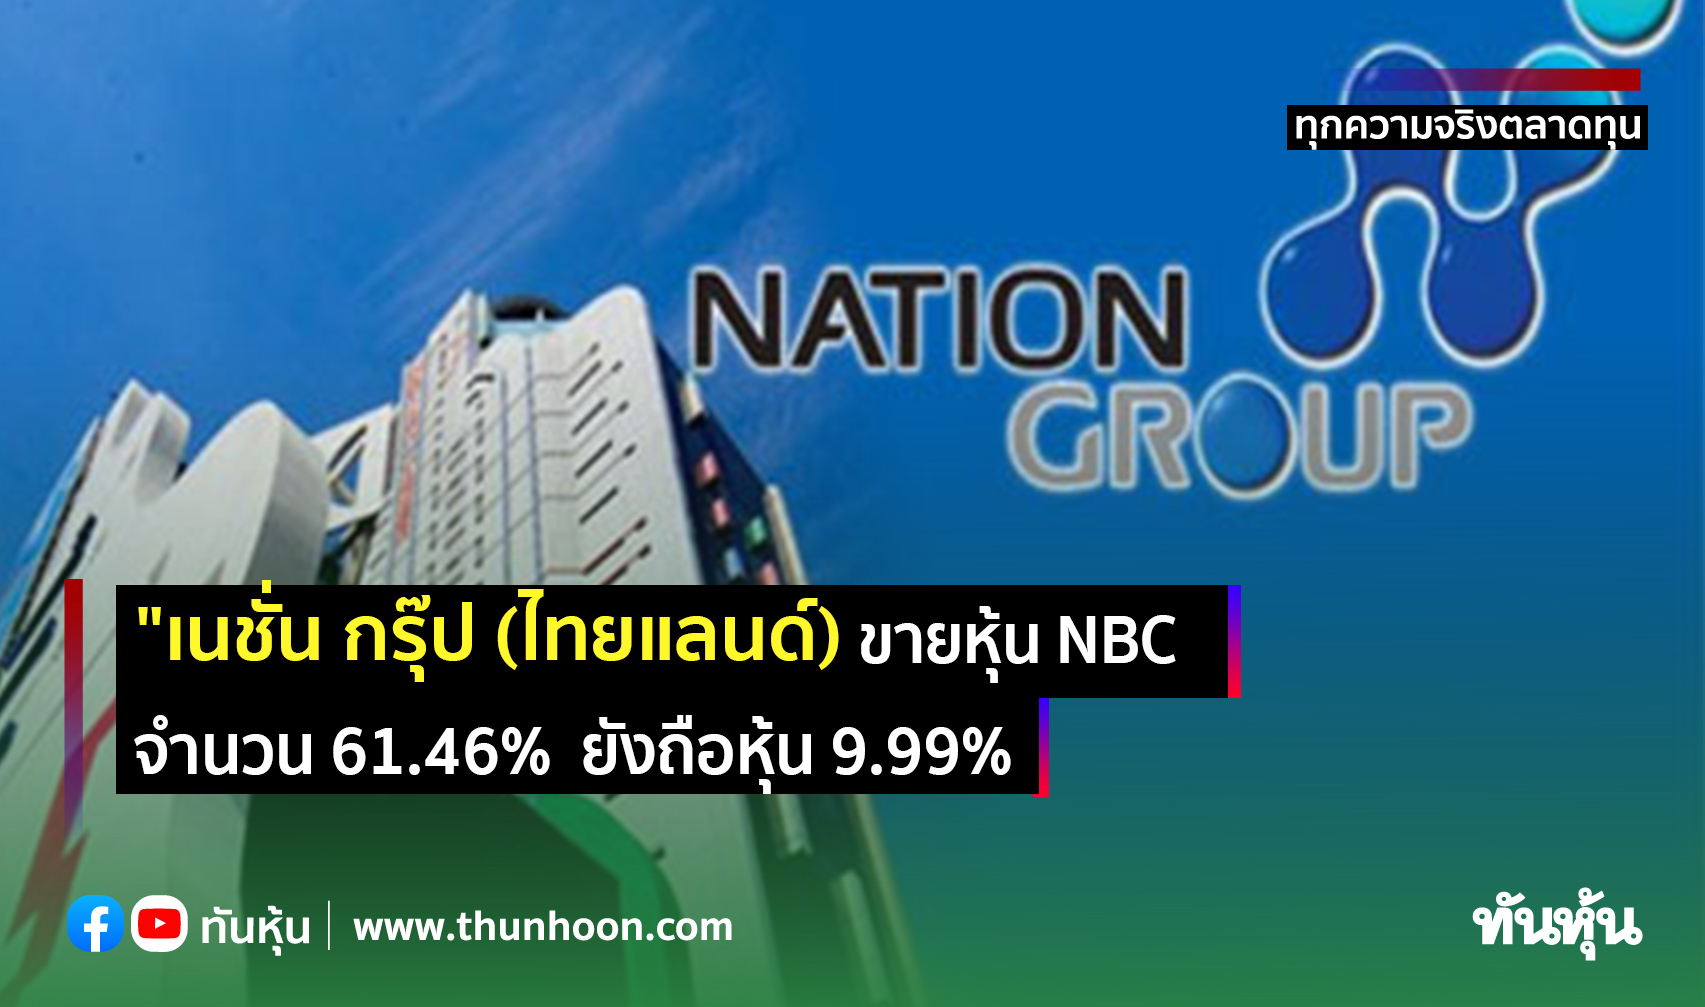 "เนชั่น กรุ๊ป" ขายหุ้น NBC จำนวน 61.46% ยังถือหุ้นในสัดส่วน 9.99%